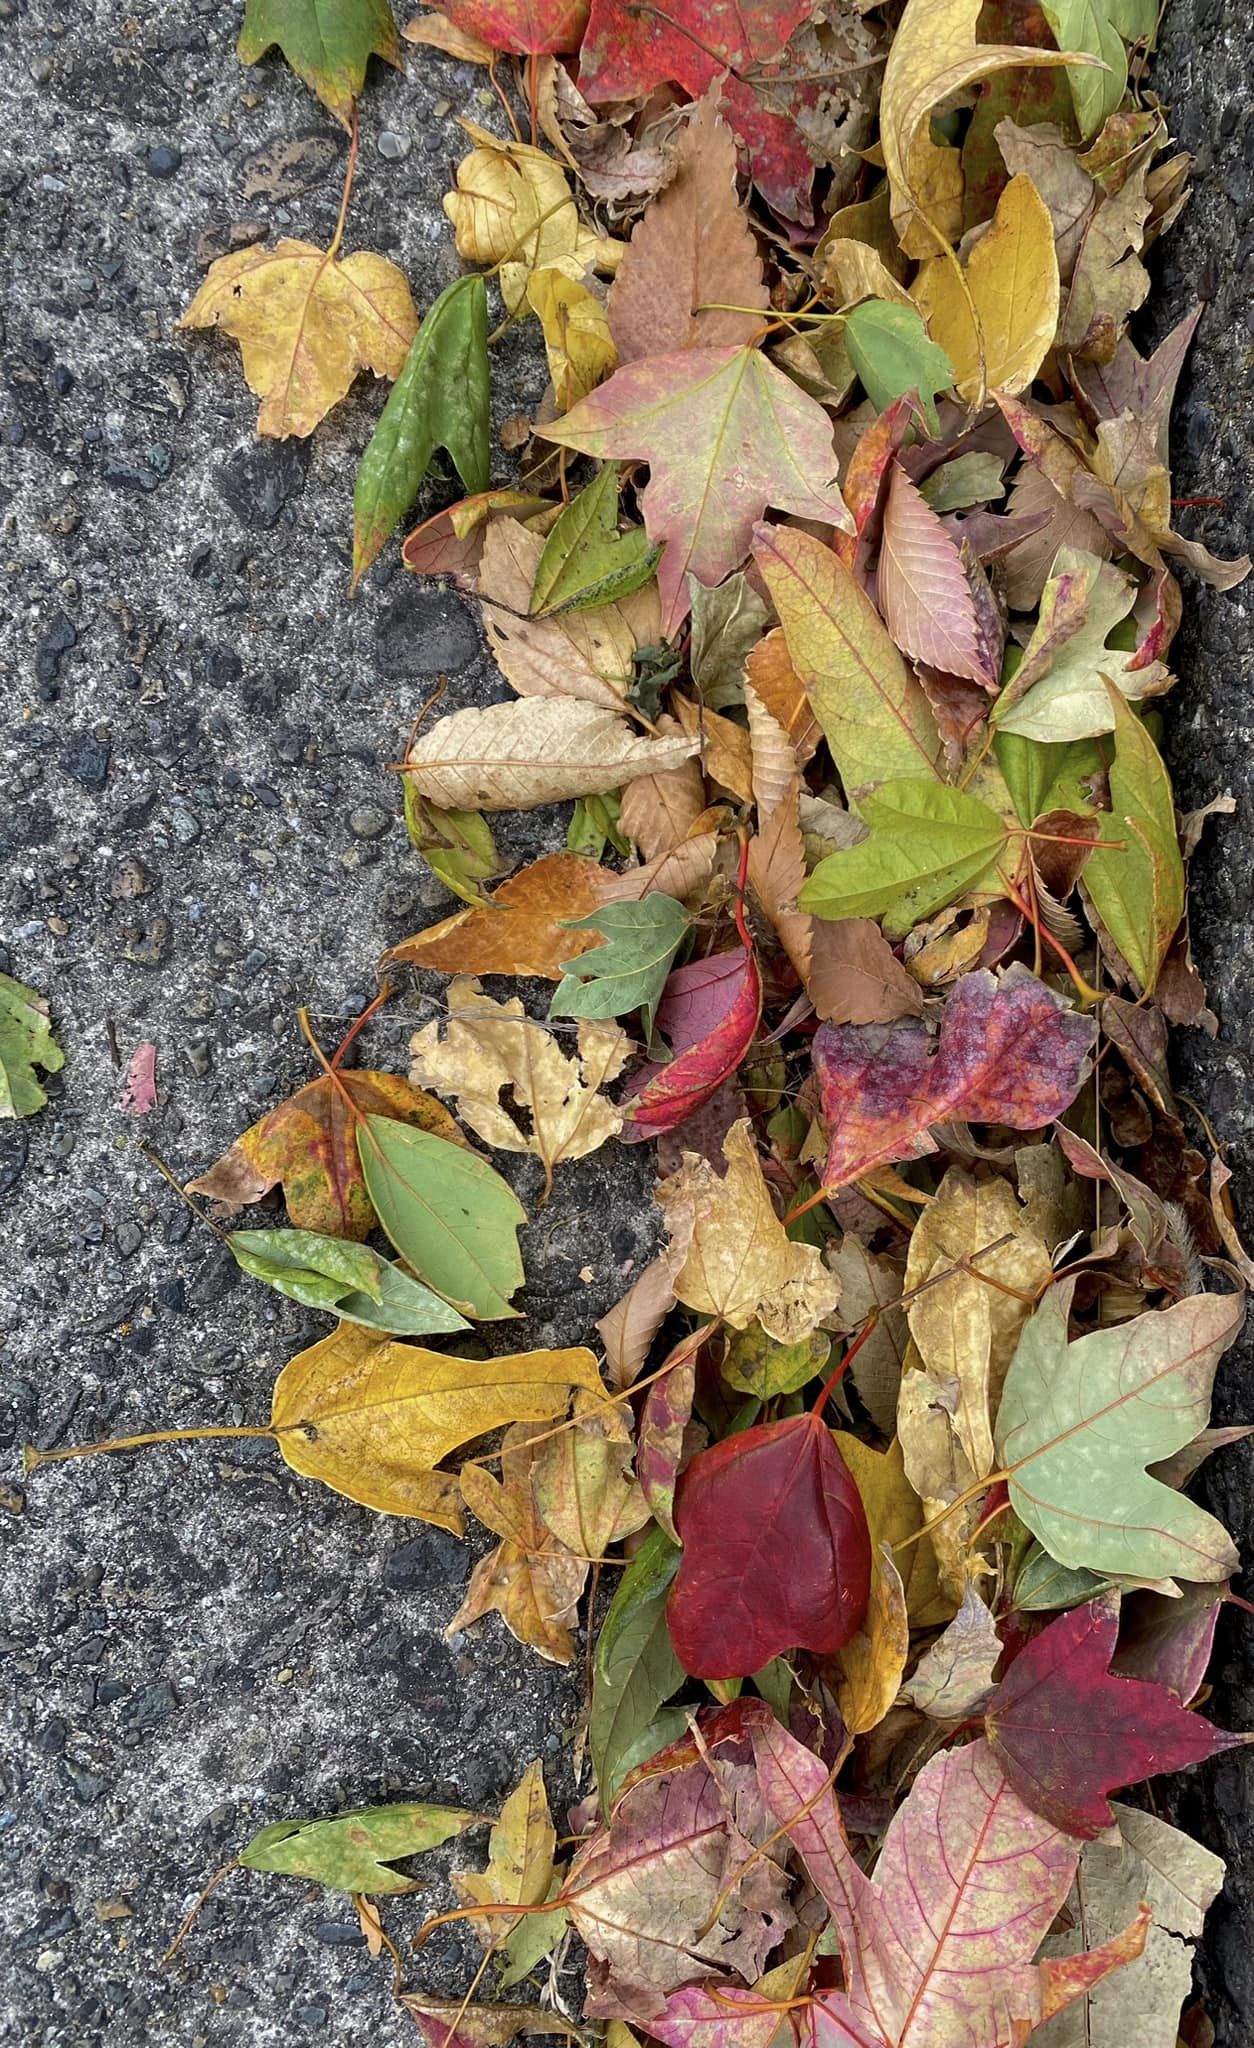 道路のすみっこに集まってた落ち葉🍂